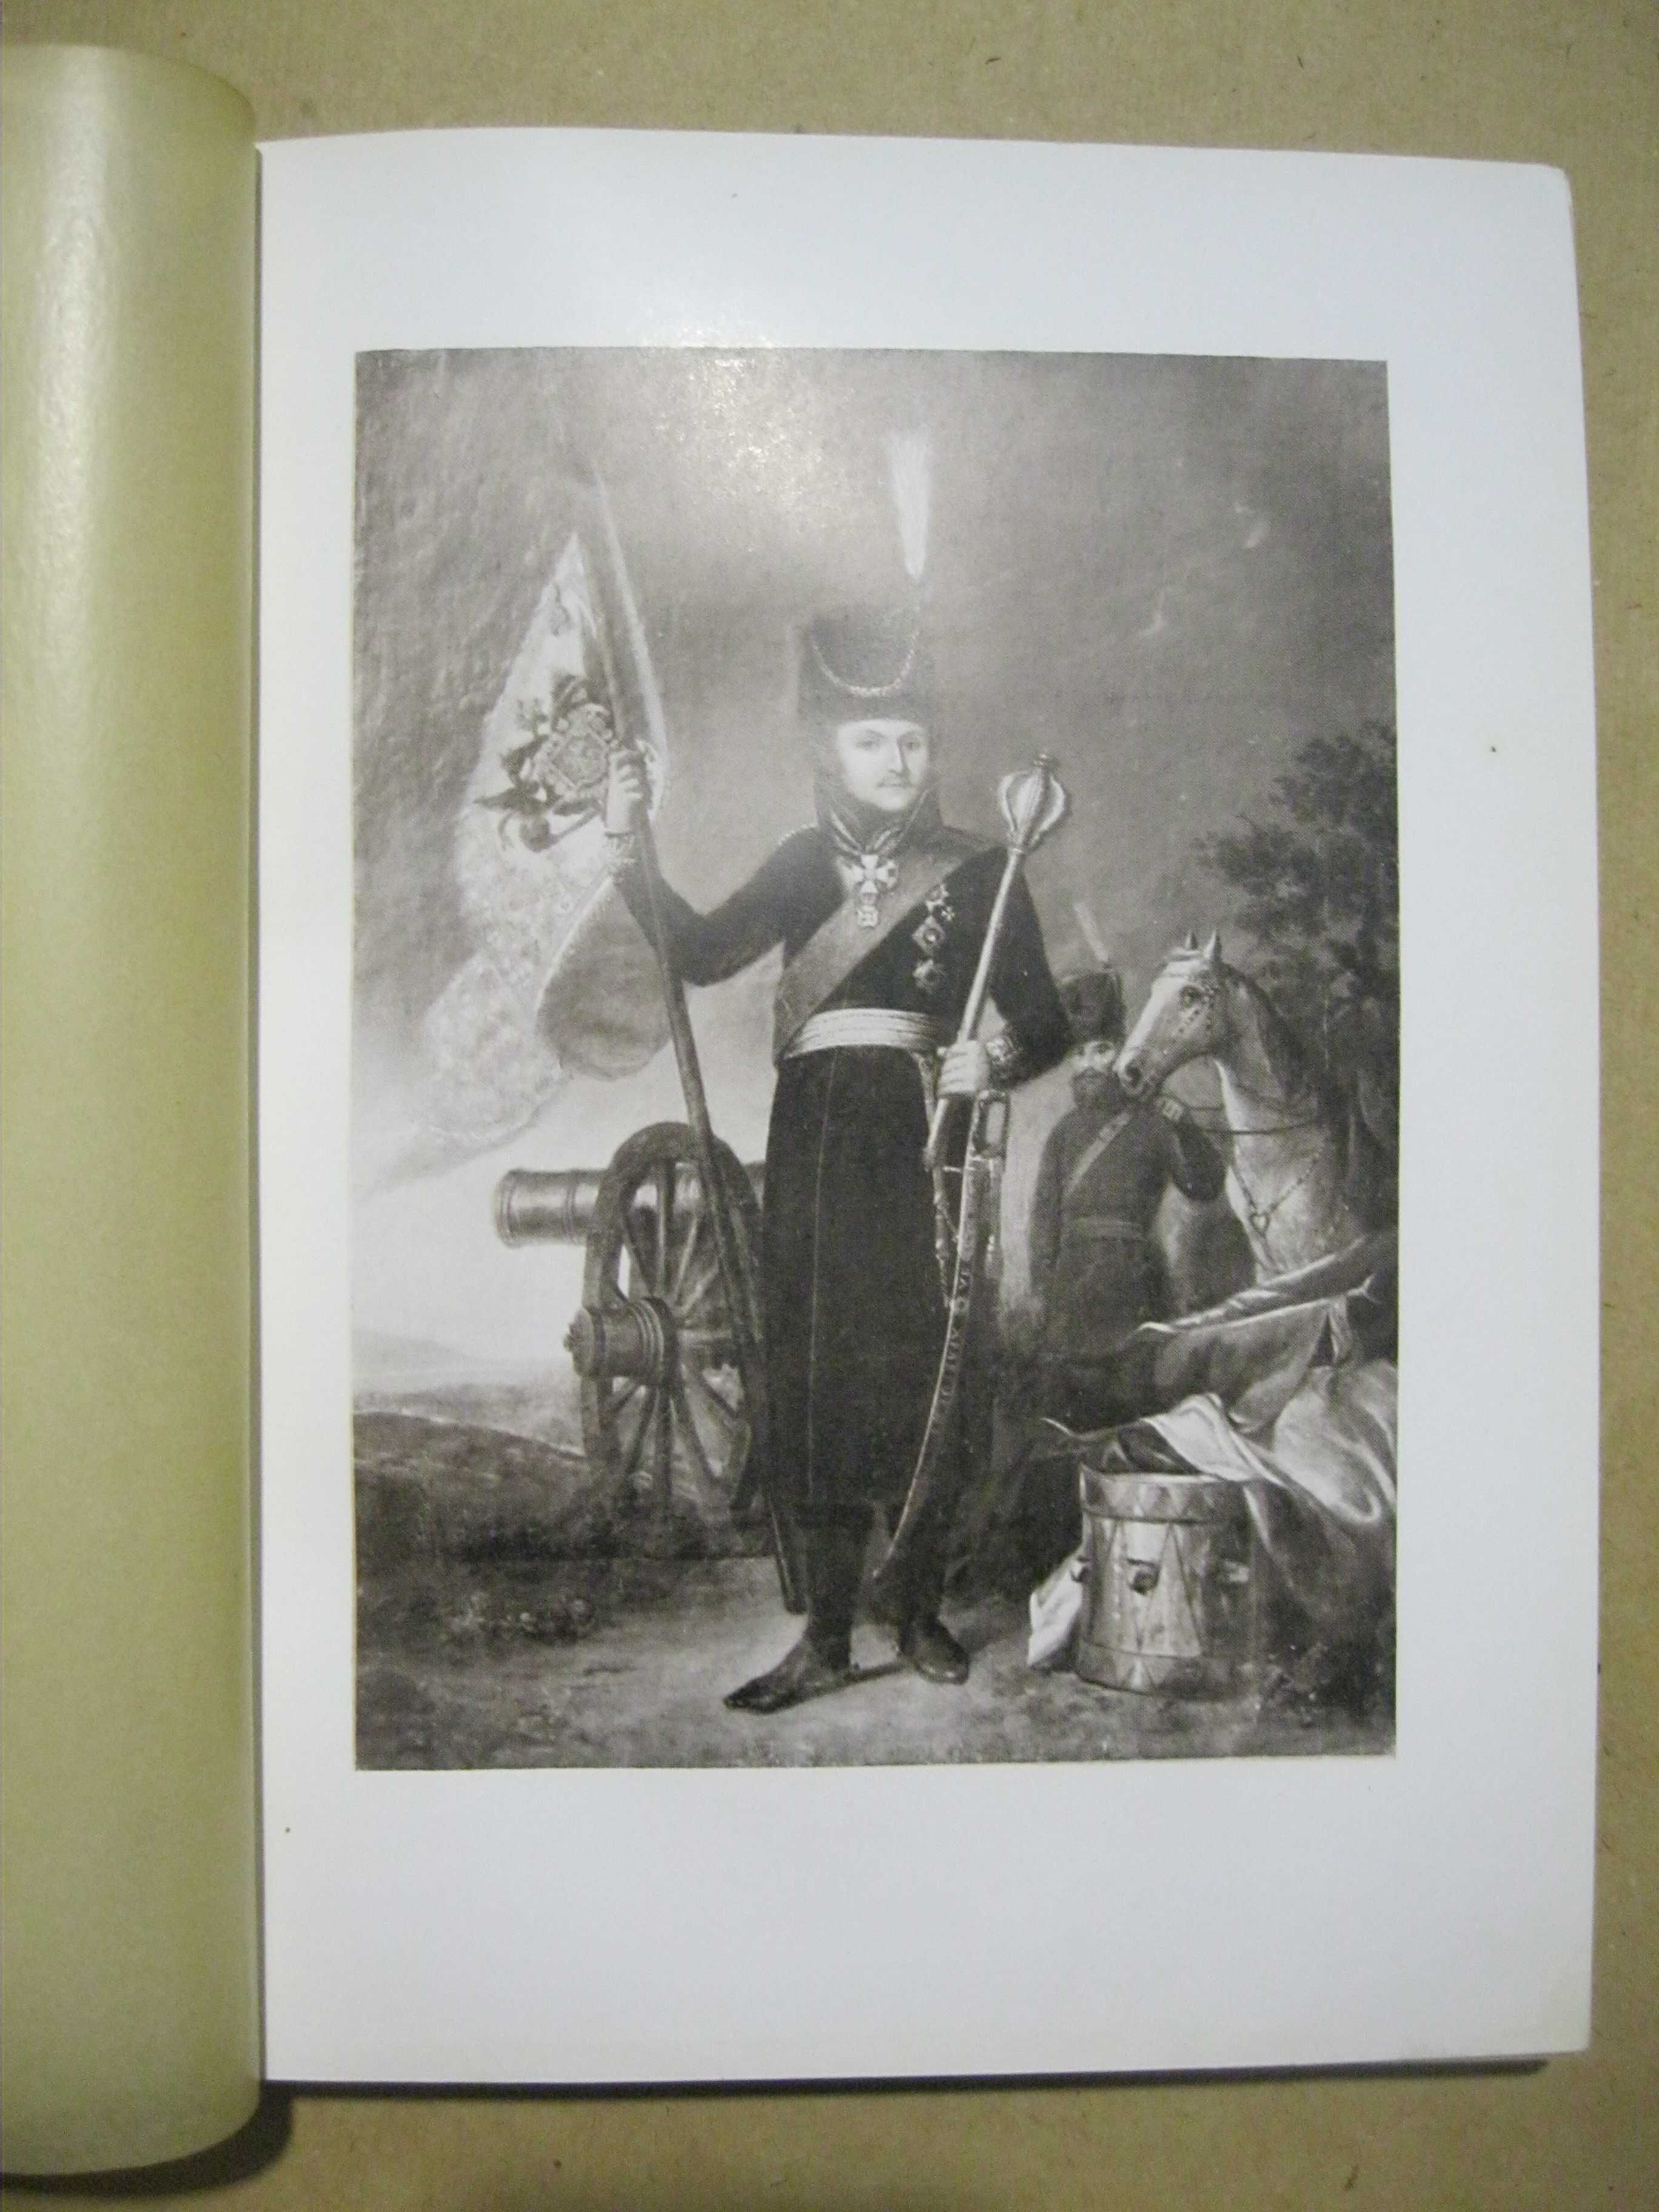 Продам книгу "Отечественная война и русское общество 1812-1912", т.6.